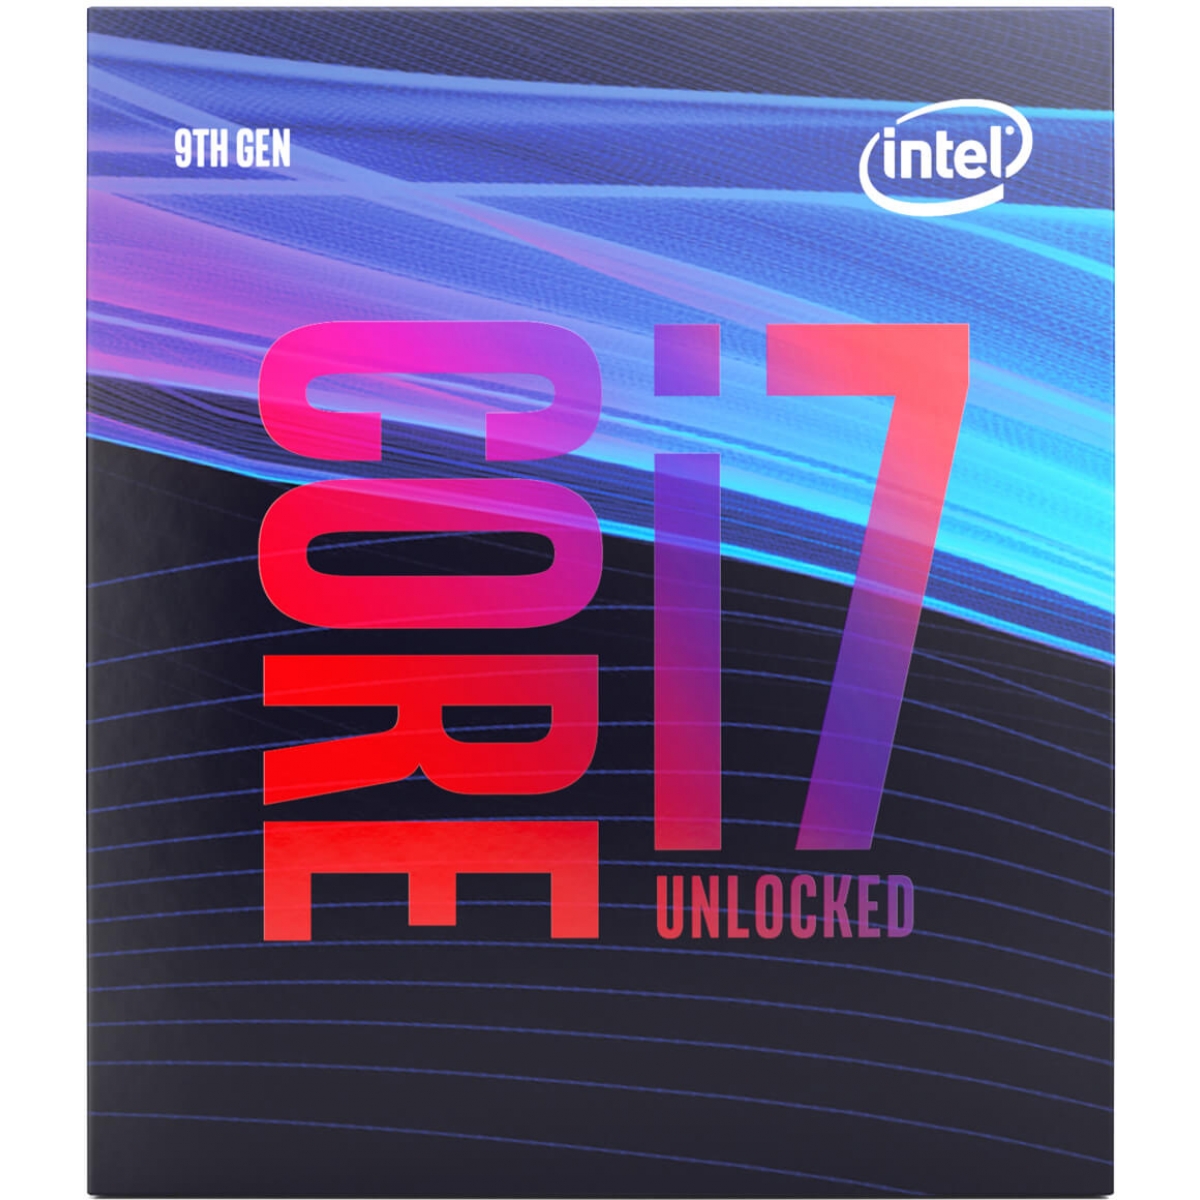 Processador Intel Core i7 9700K 3.60GHz (4.90GHz Turbo), 9ª Geração, 8-Core 8-Thread, LGA 1151, BX80684I79700K